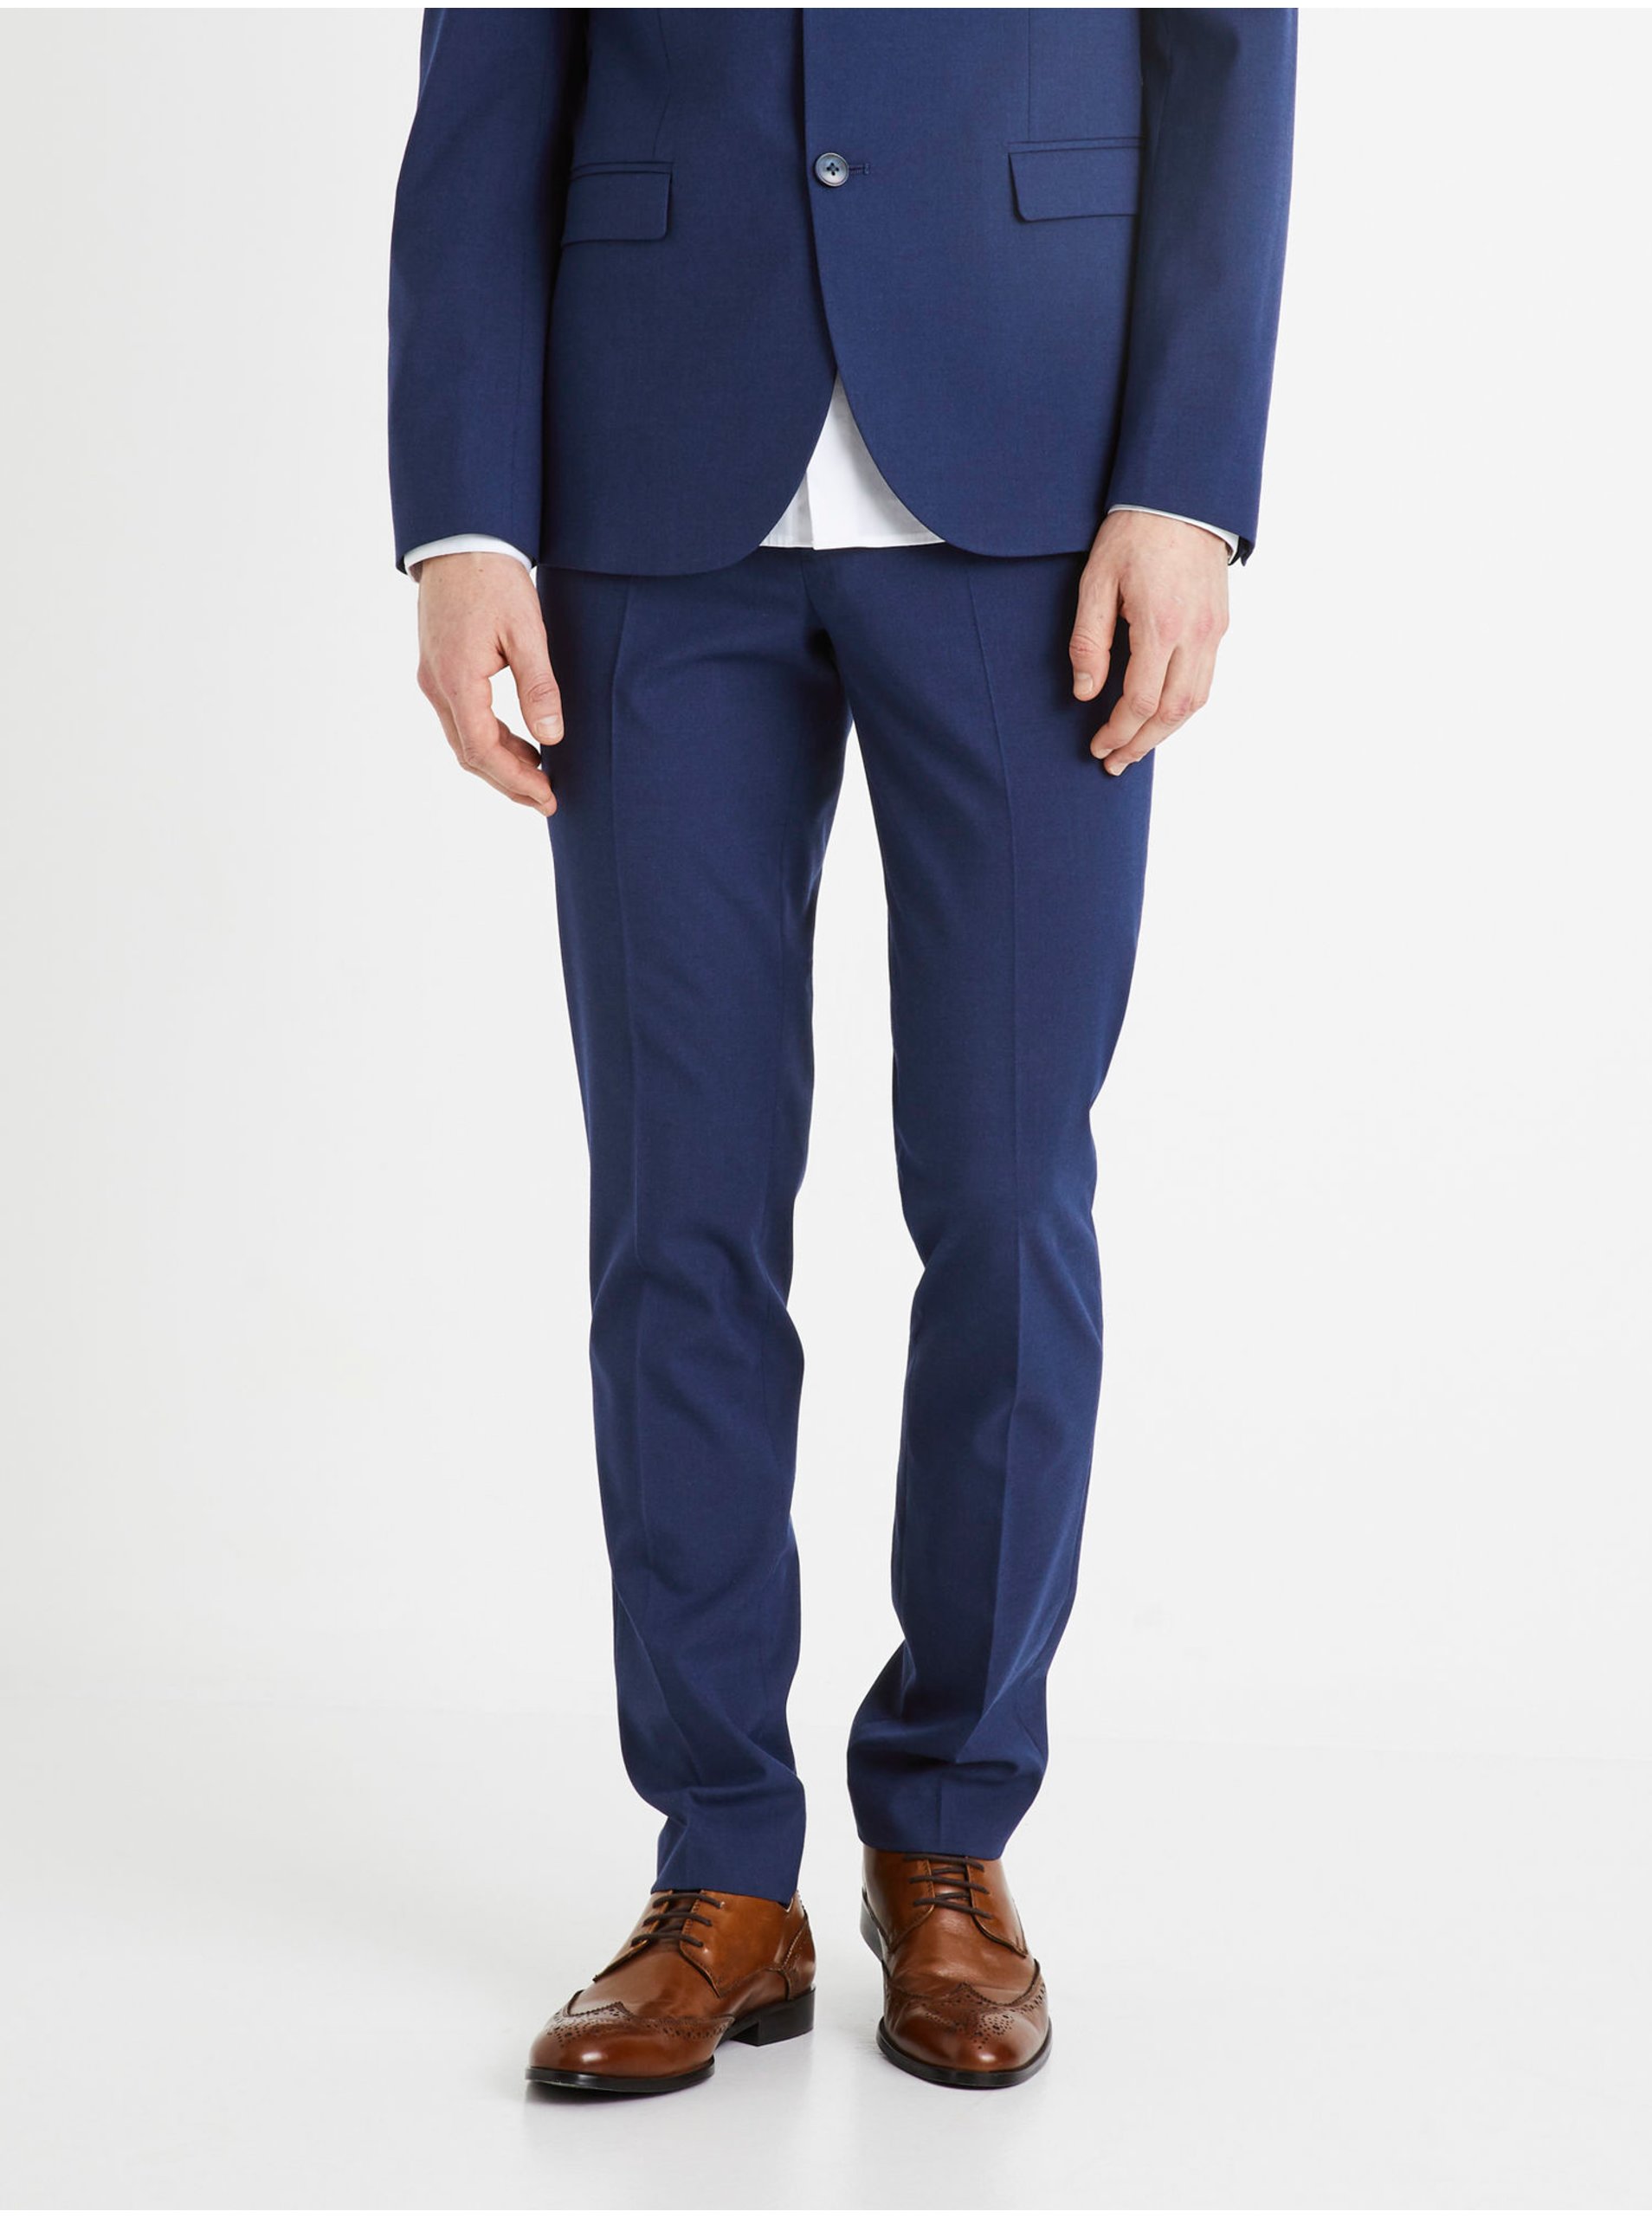 Lacno Formálne nohavice pre mužov Celio - modrá